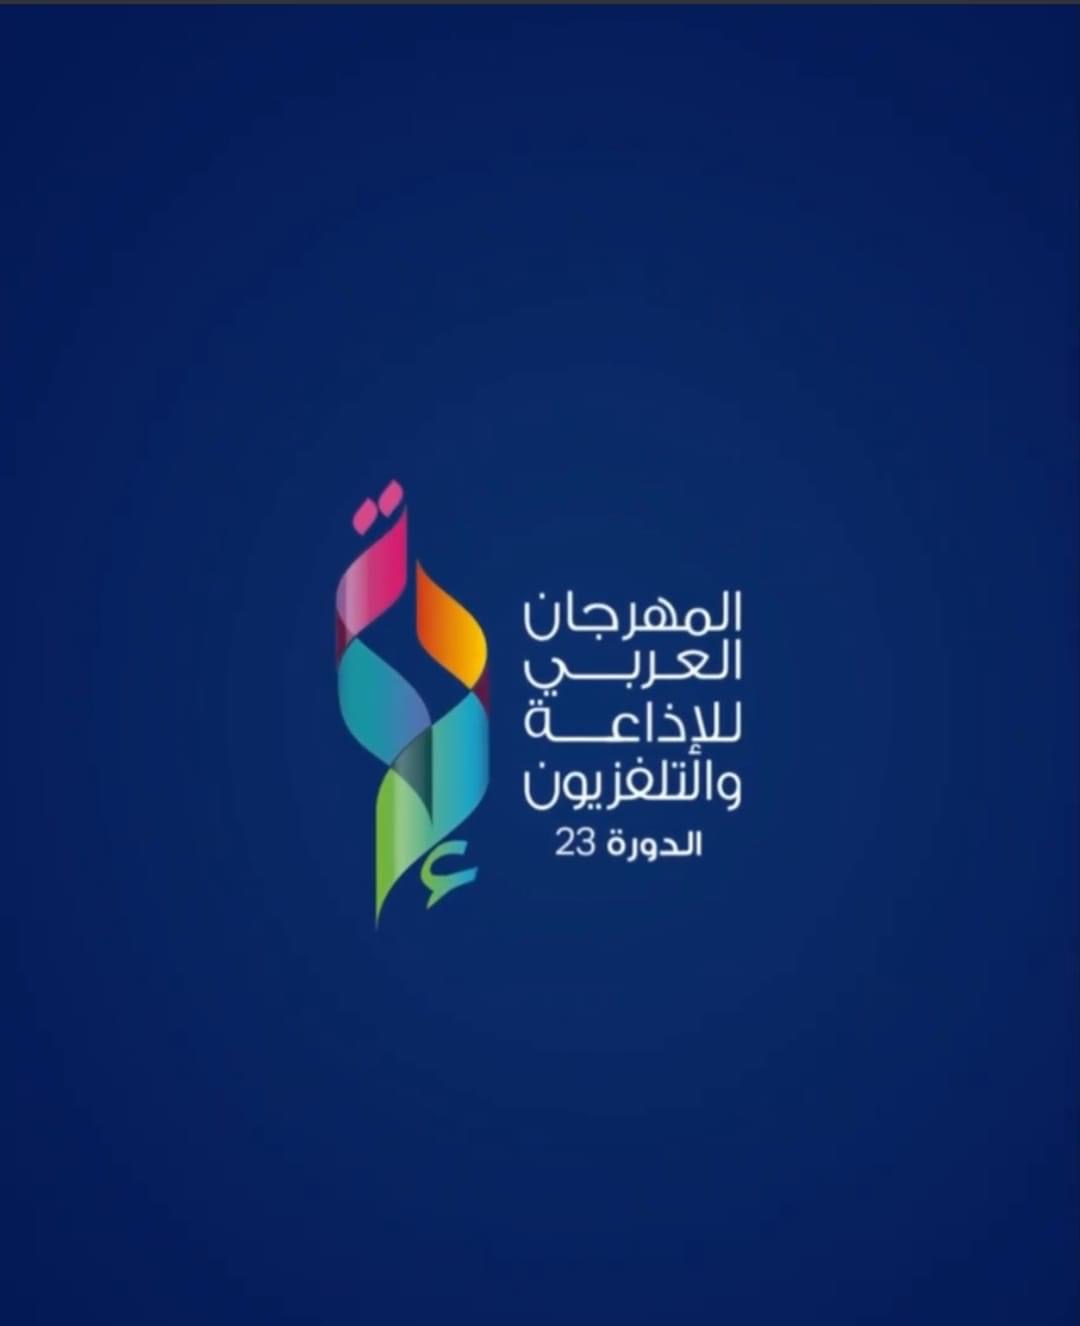 المهرجان العربي للإذاعة والتلفزيون